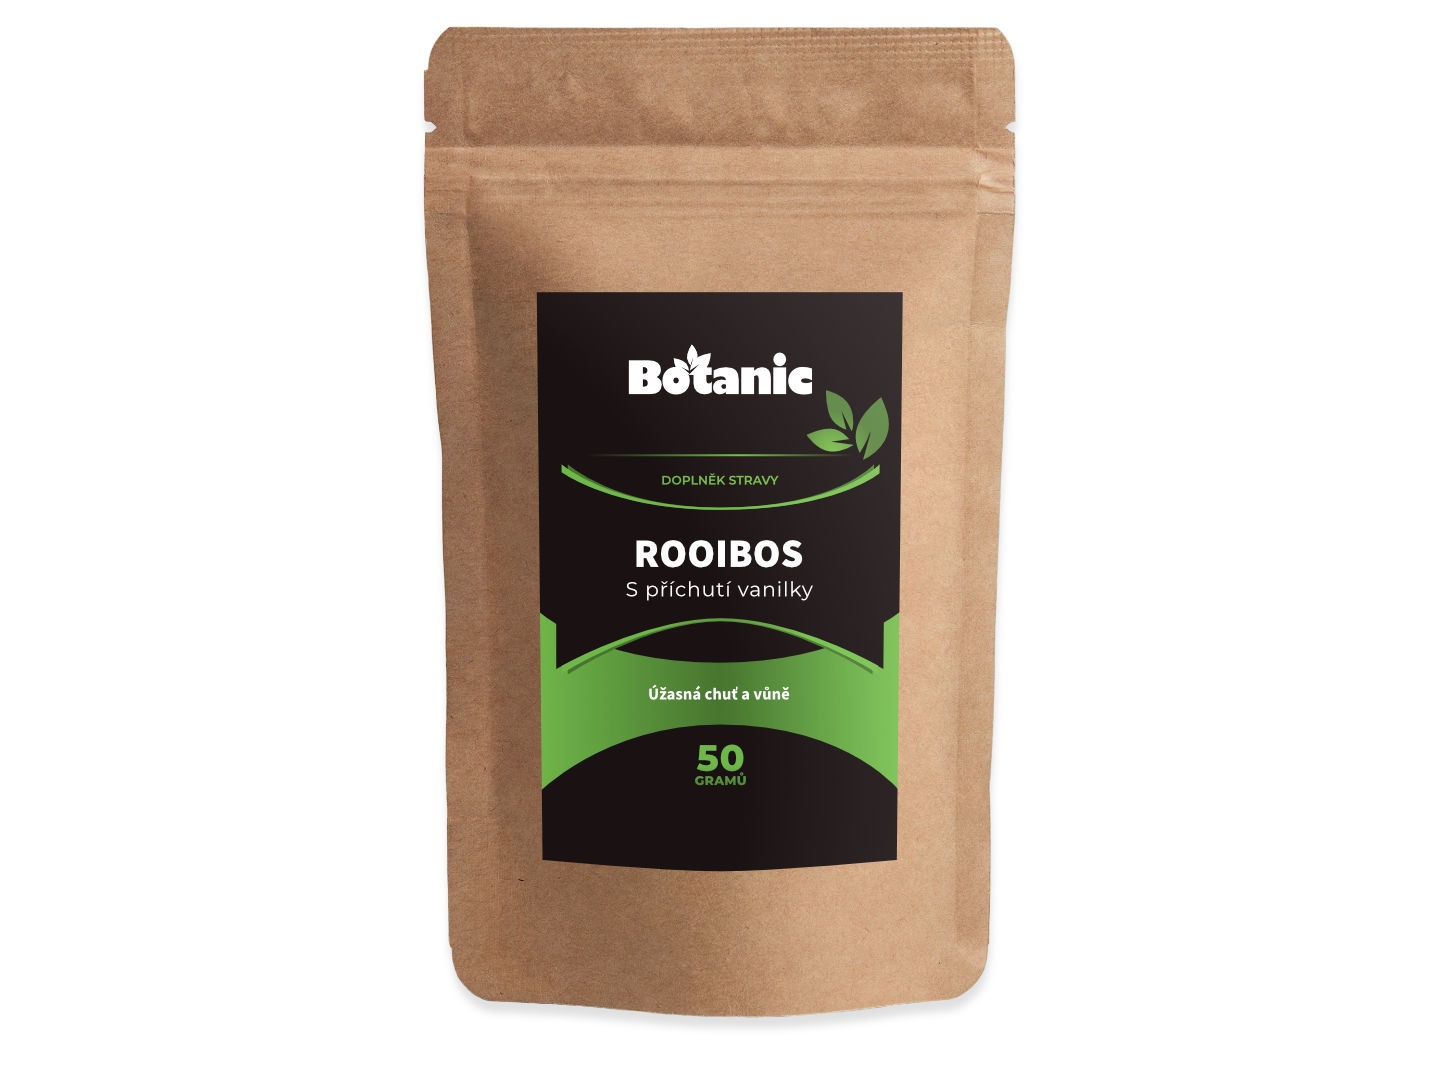 Botanic Rooibos - S příchutí vanilky 50g